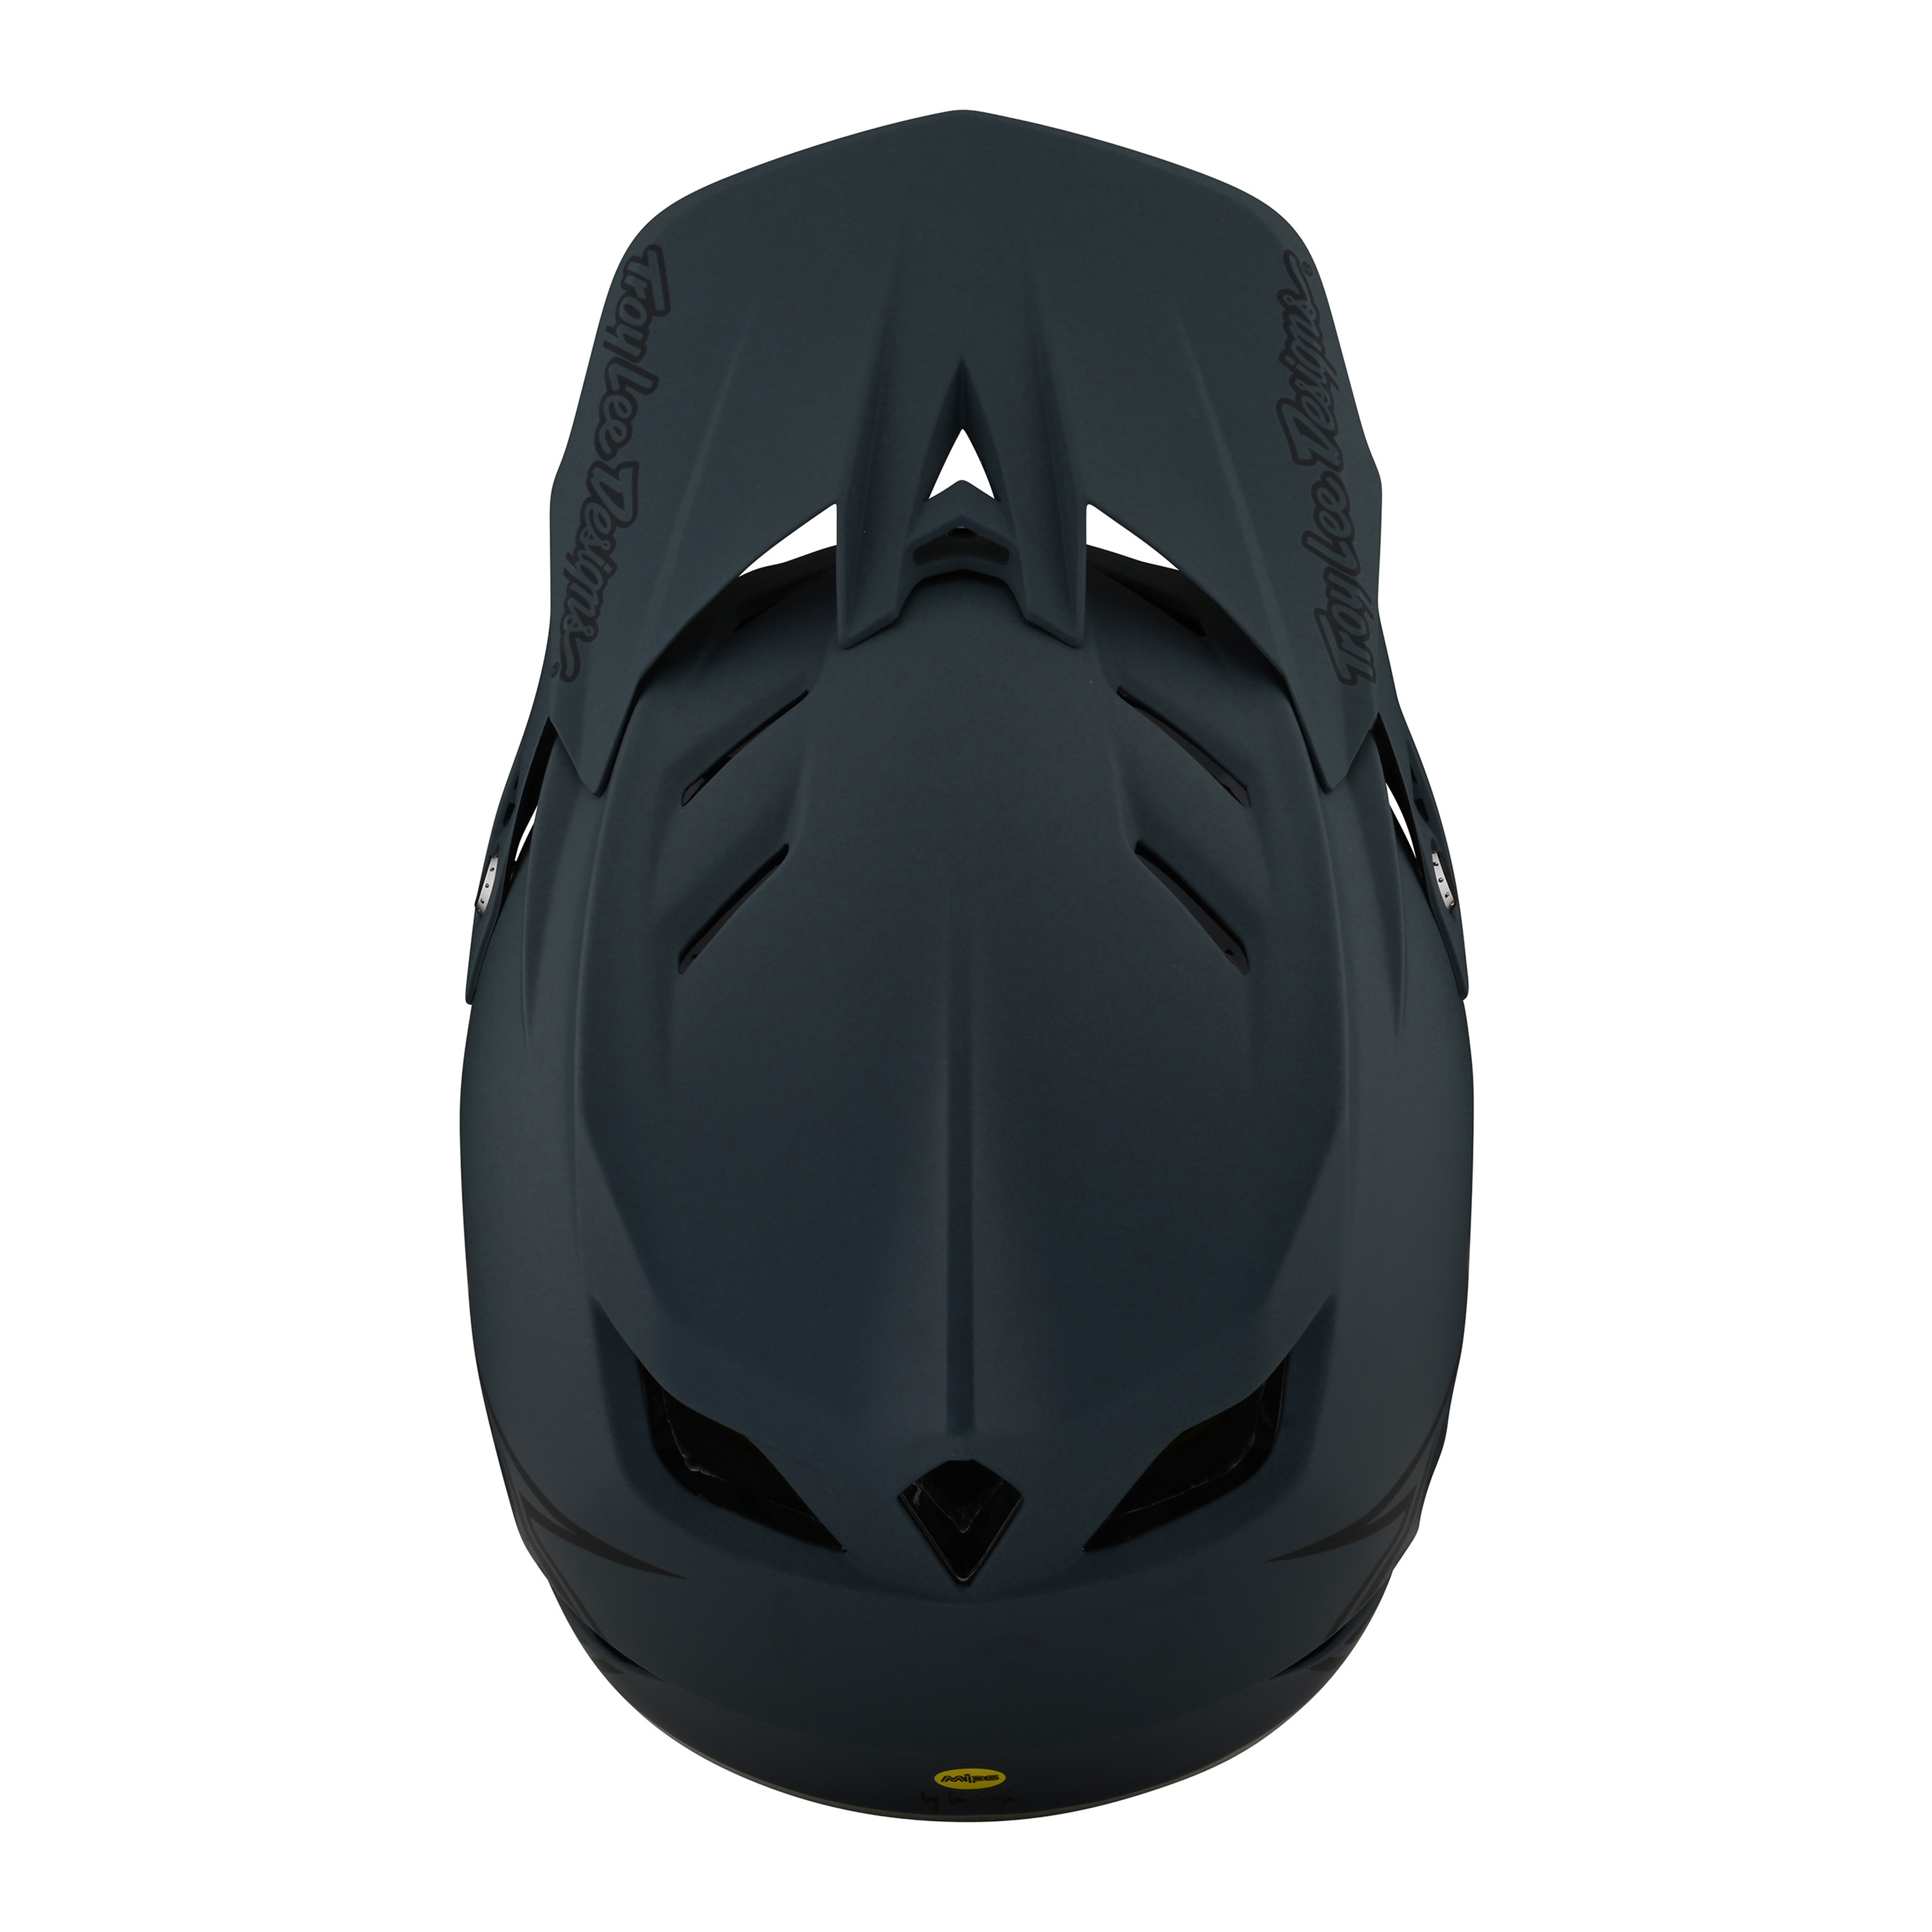 트로이리 디자인 D4 콤포지트 헬멧 (스텔스 그레이)